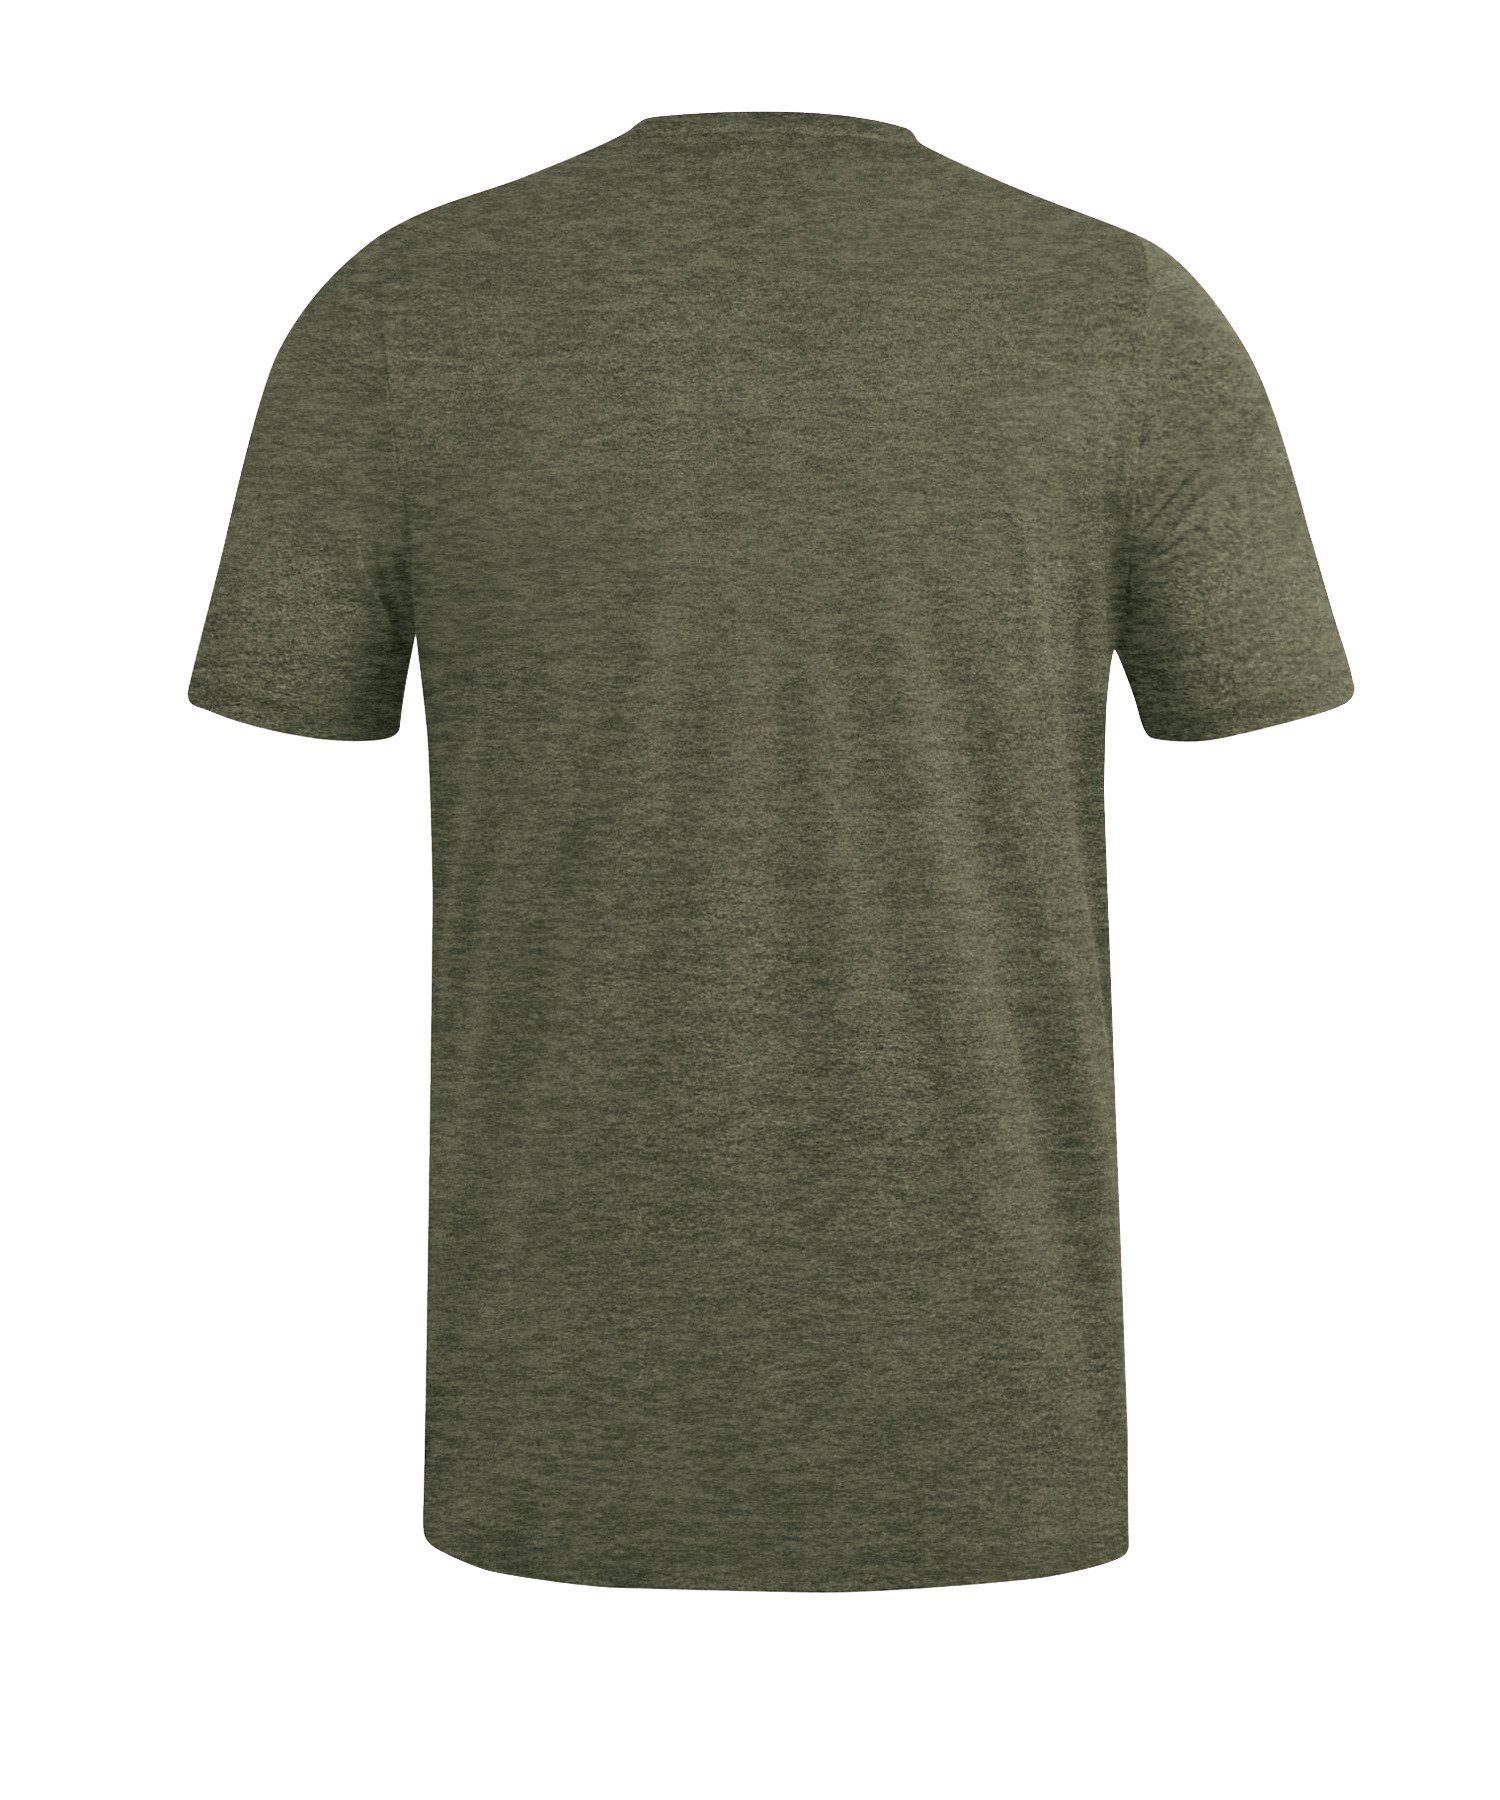 Jako Basic default T-Shirt Premium T-Shirt khaki